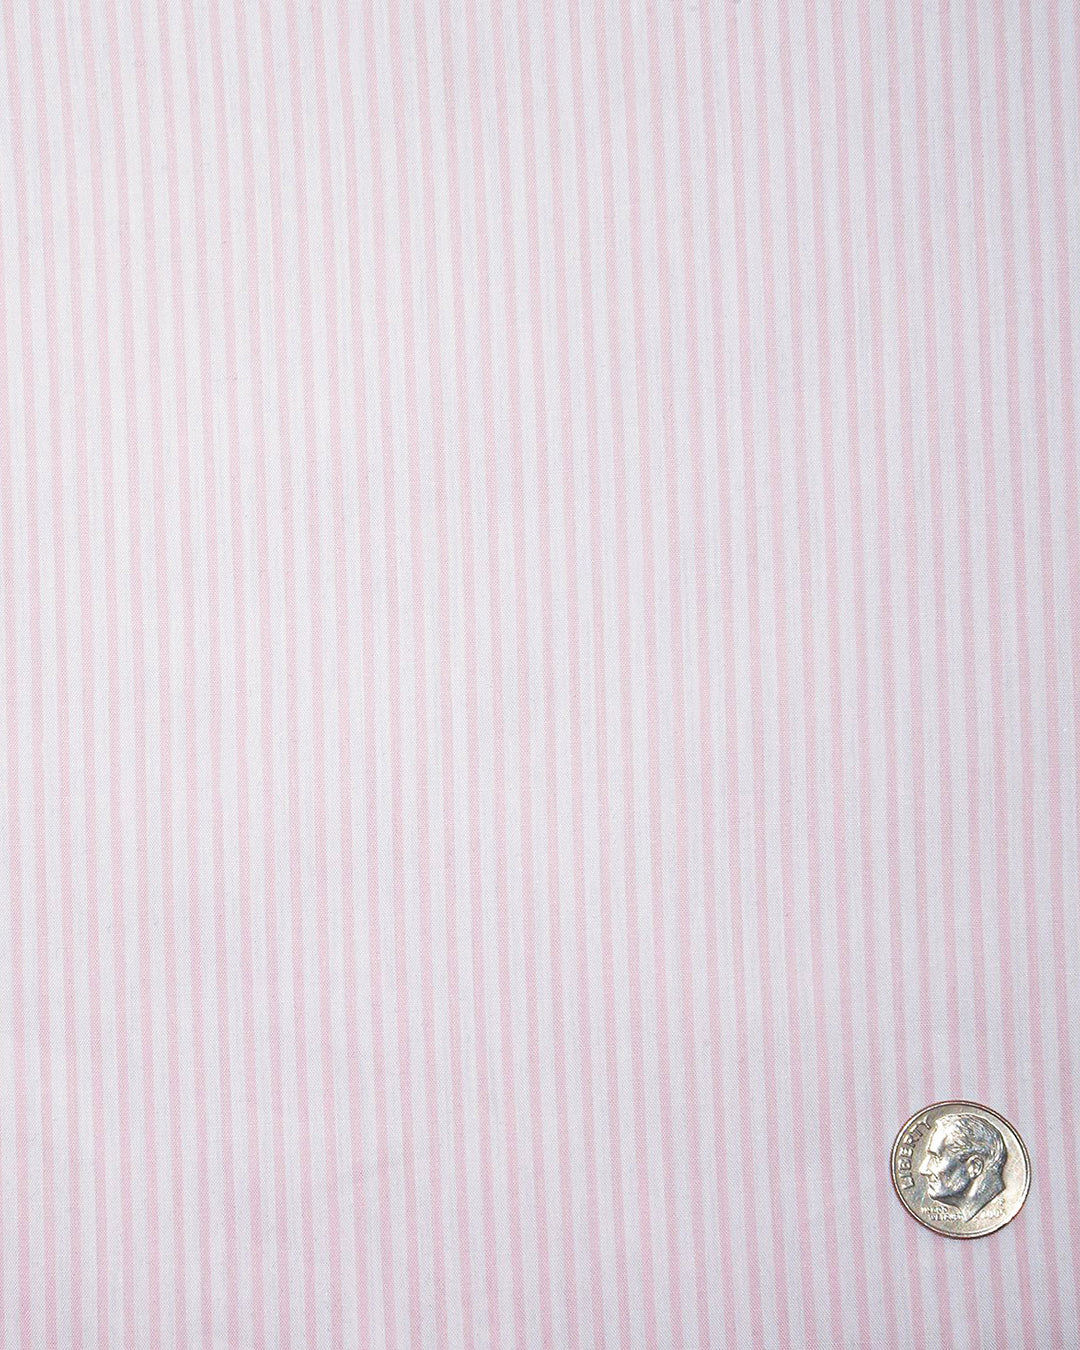 Blush Pink White Candy Stripes Shirt